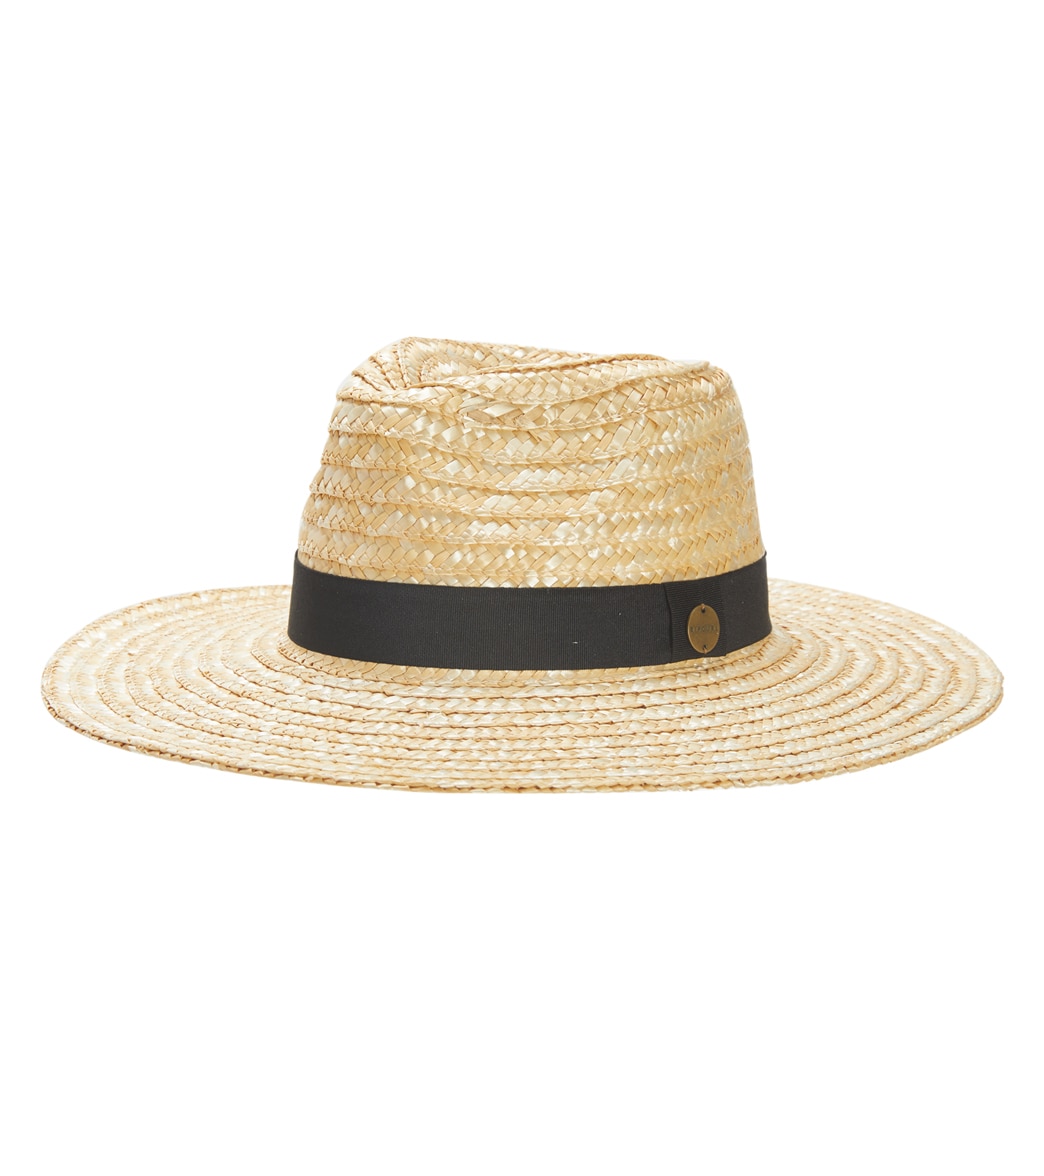 Rip Curl Women's Sunseeker Upf Sun Hat - Natural Medium - Swimoutlet.com